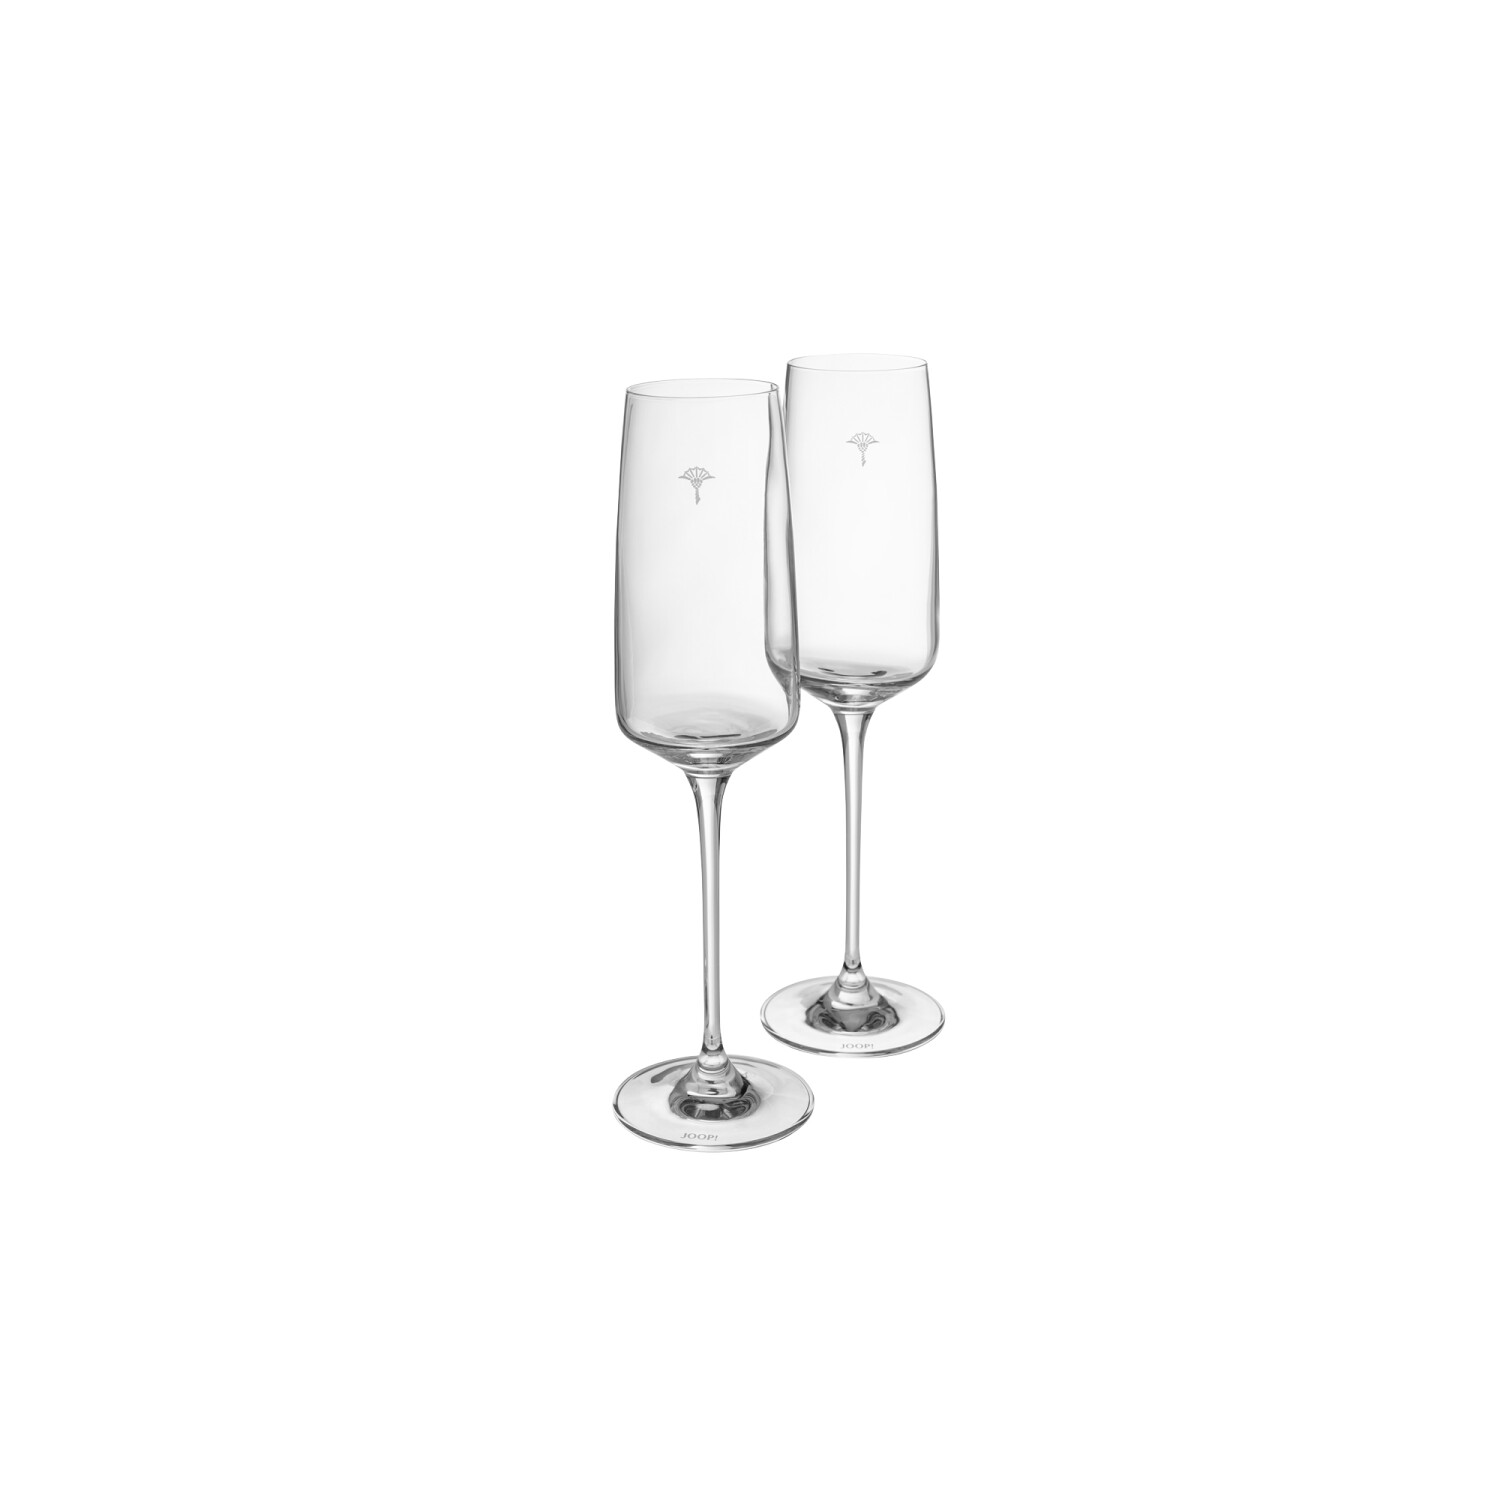 Joop! Champagnerglas Single Cornflower 2er Set 6 x 24,5 cm ab 19,99 € |  Preisvergleich bei